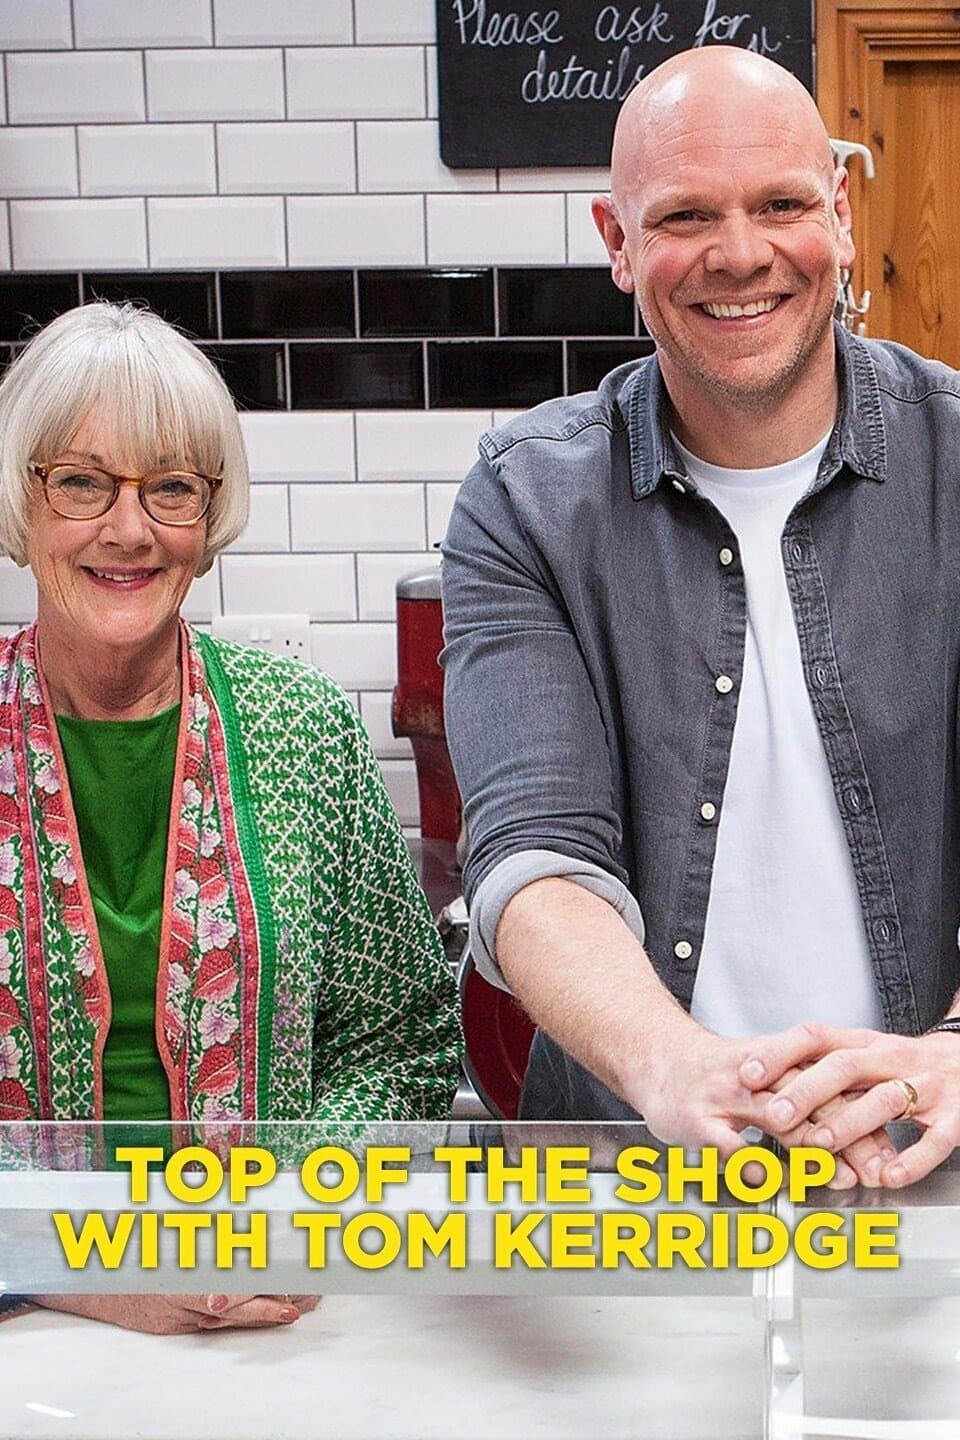 Top of the Shop with Tom Kerridge